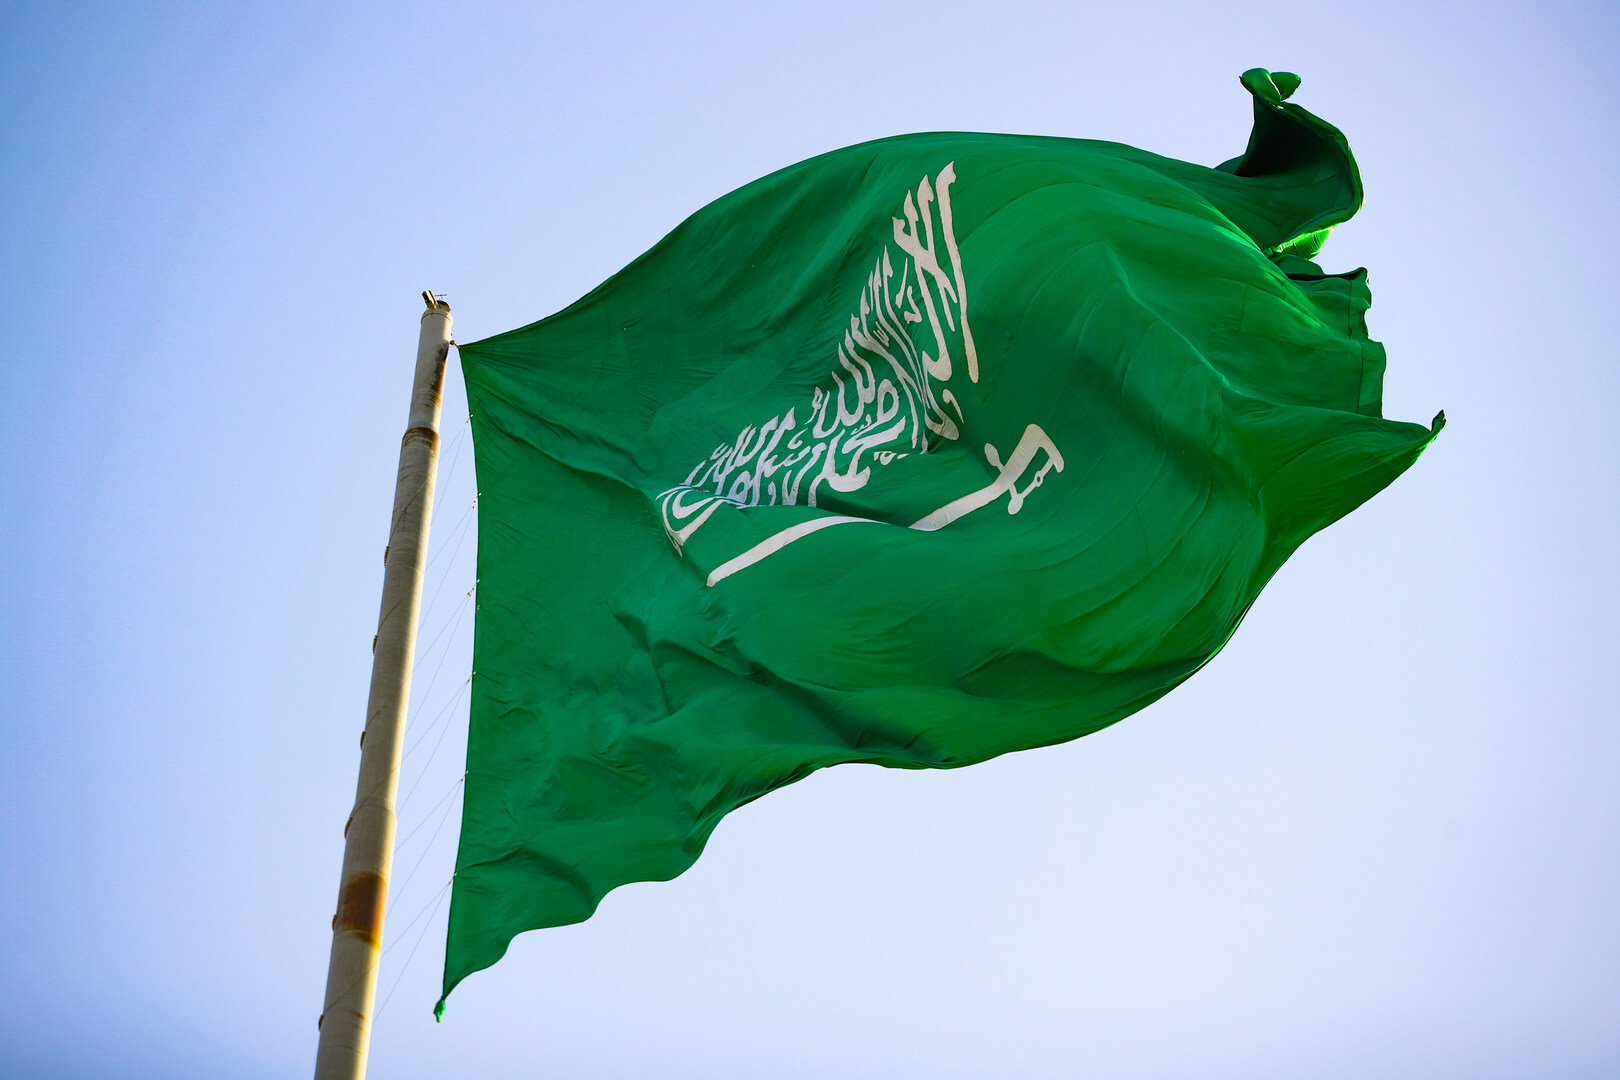 المركزي السعودي: اقتصاد المملكة يحقق نموا مرتفعا والتضخم ضمن المعدلات المقبولة